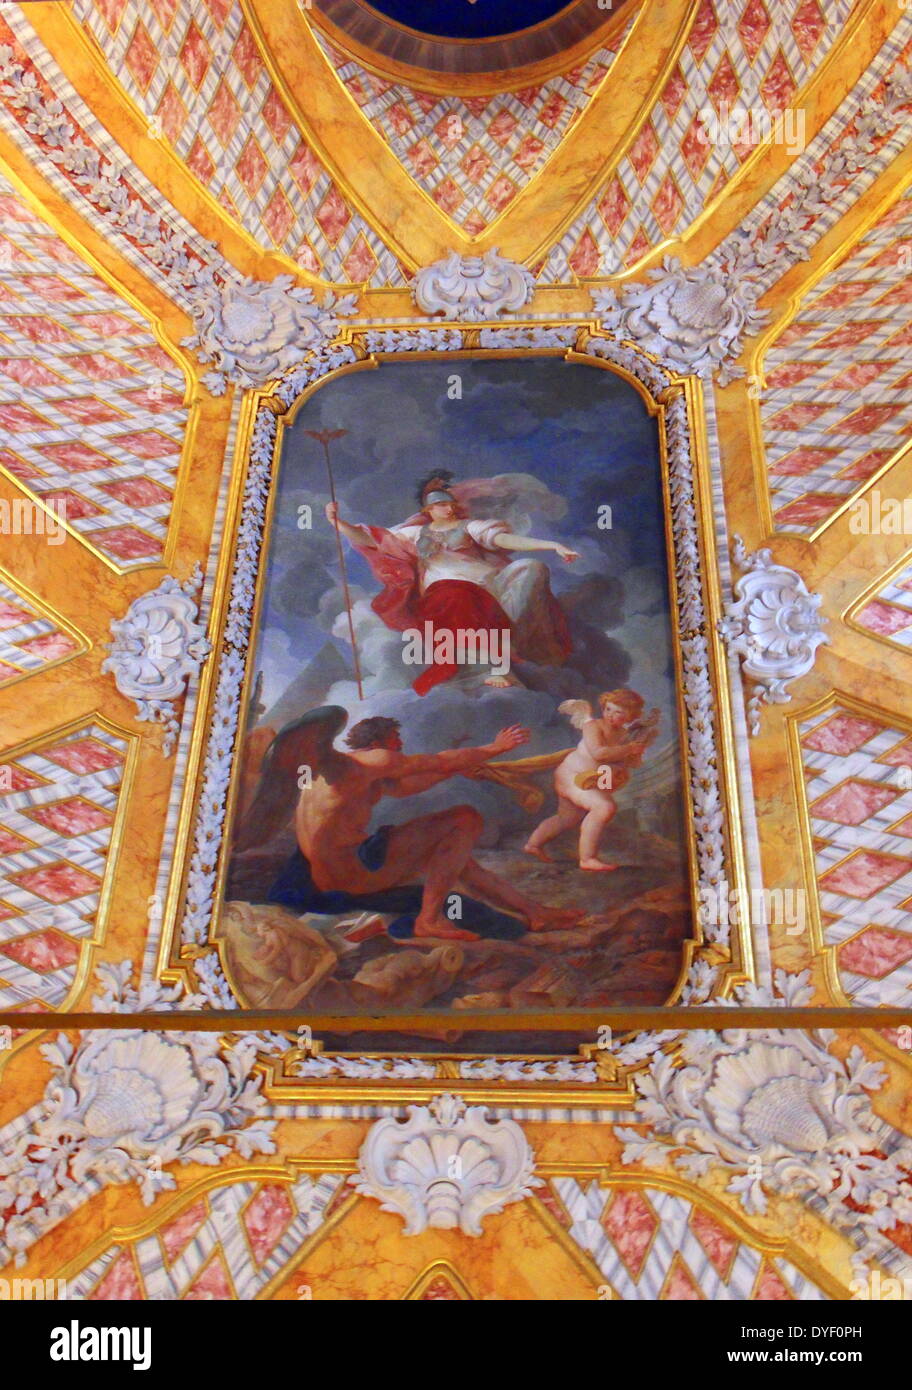 Die Vatikanischen Museen, eine riesige Sammlung der klassischen Detail, Renaissance Meisterwerke etc., die im frühen 16. Jahrhundert von Papst Julius II. gegründet werden Sie als, einige der größten Museen der Welt. Dieses Bild zeigt einen Teil der wunderschön bemalten Decke. Stockfoto